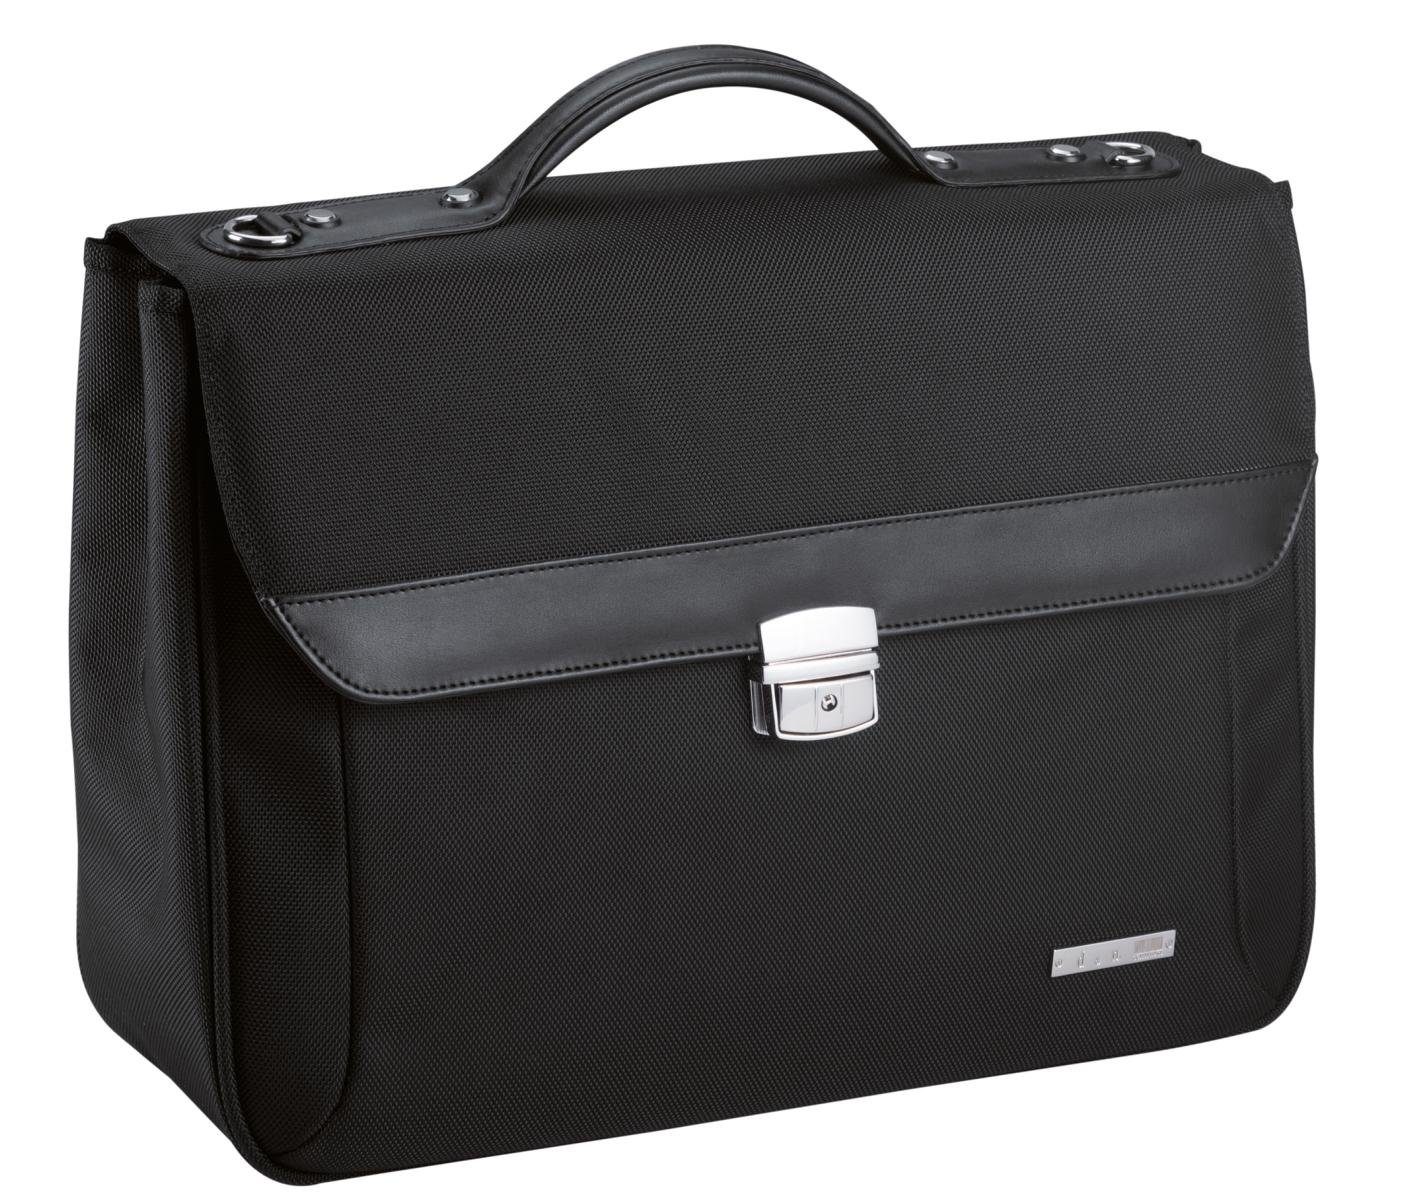 D&N Businesstasche Moderne Aktentasche in Schwarz für anspruchsvolle Berufstätige